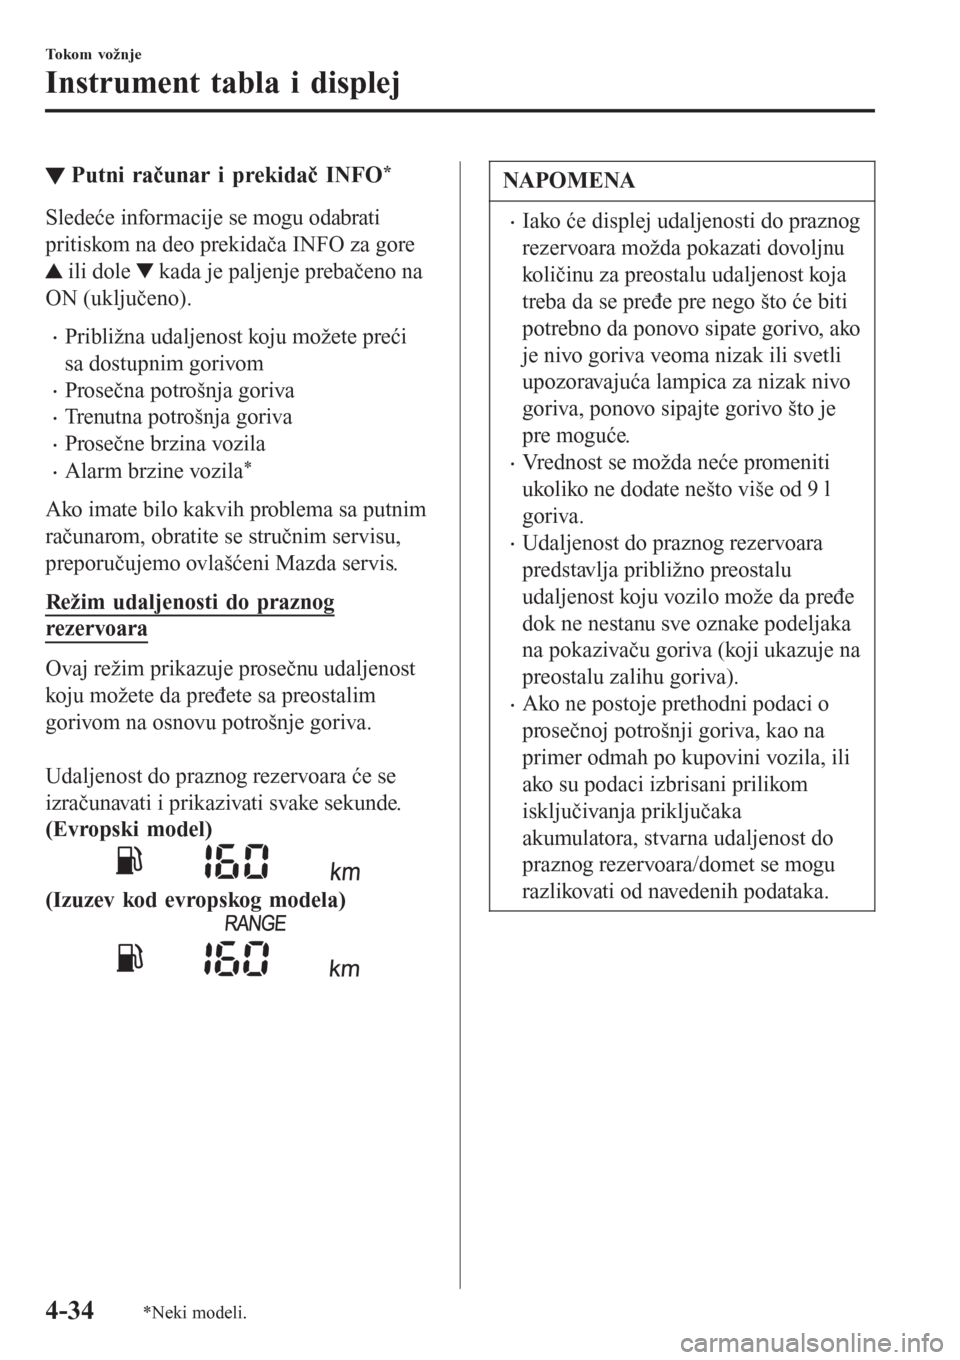 MAZDA MODEL CX-3 2016  Korisničko uputstvo (in Serbian) ▼Putni računar i prekidač INFO*
Sledeće informacije se mogu odabrati
pritiskom na deo prekidača INFO za gore
 ili dole  kada je paljenje prebačeno na
ON (uključeno).
•Približna udaljenost k